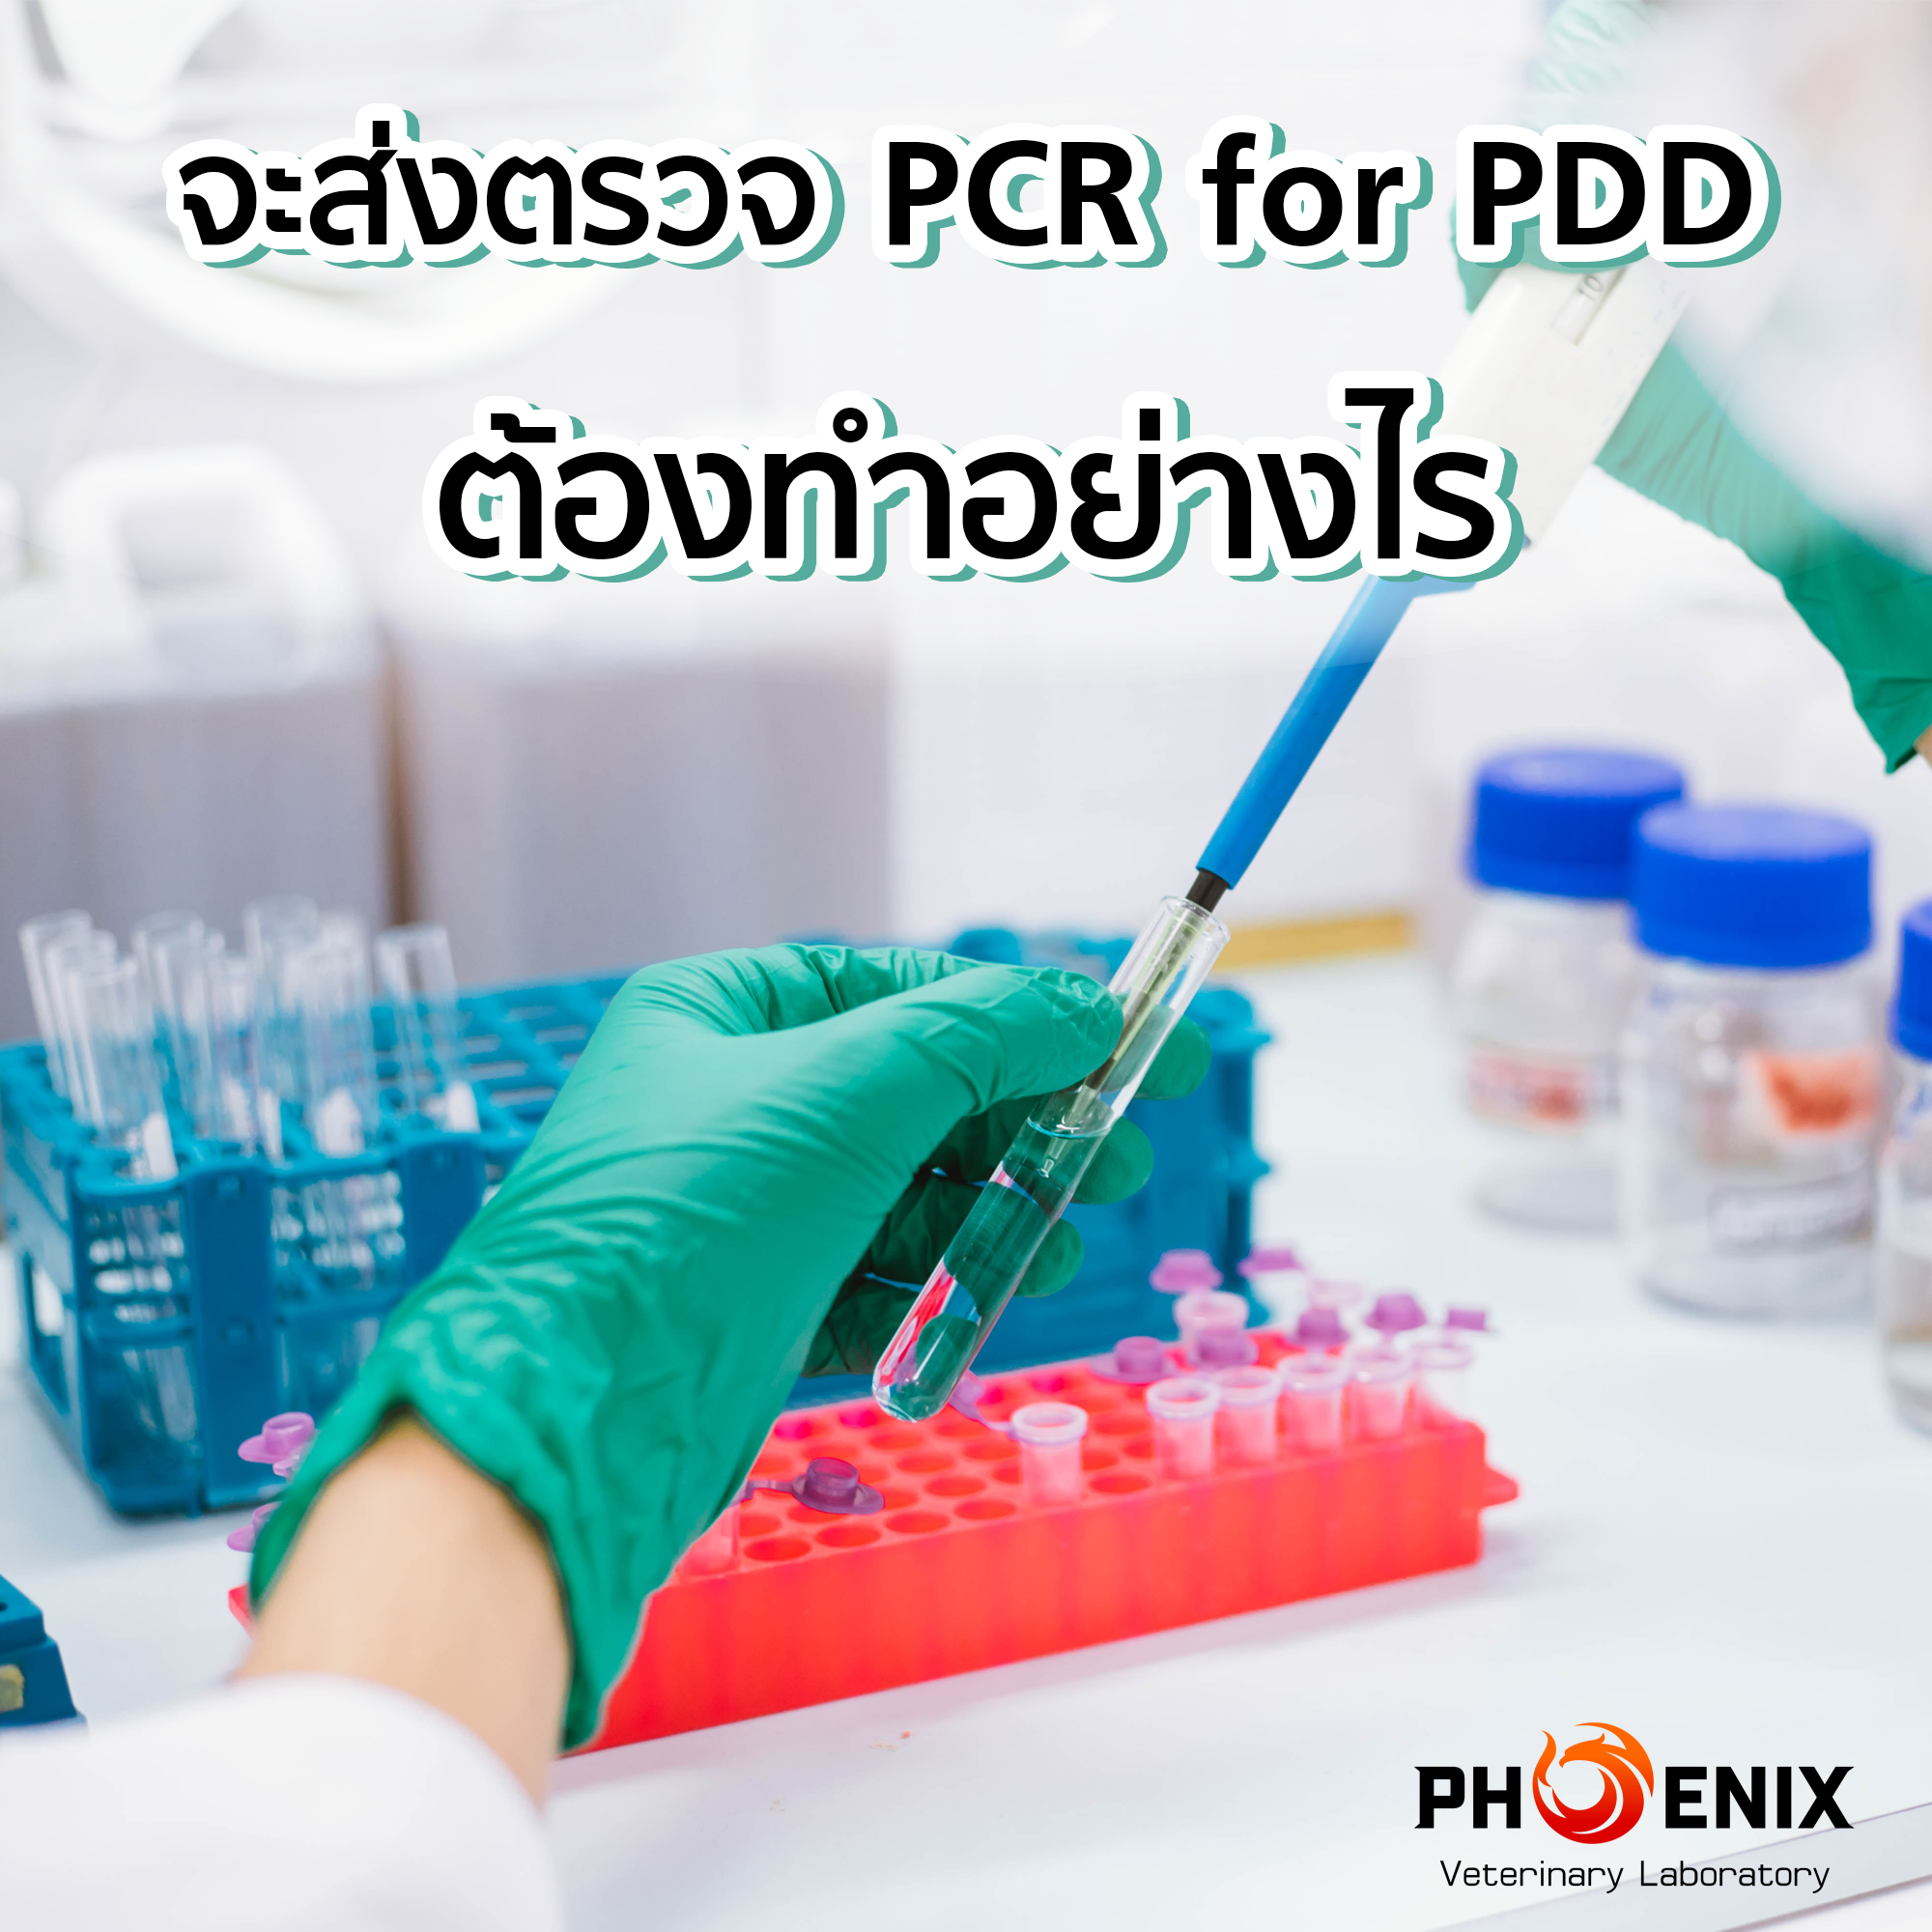 จะส่งตรวจ PCR for PDD ต้องทำอย่างไร ...